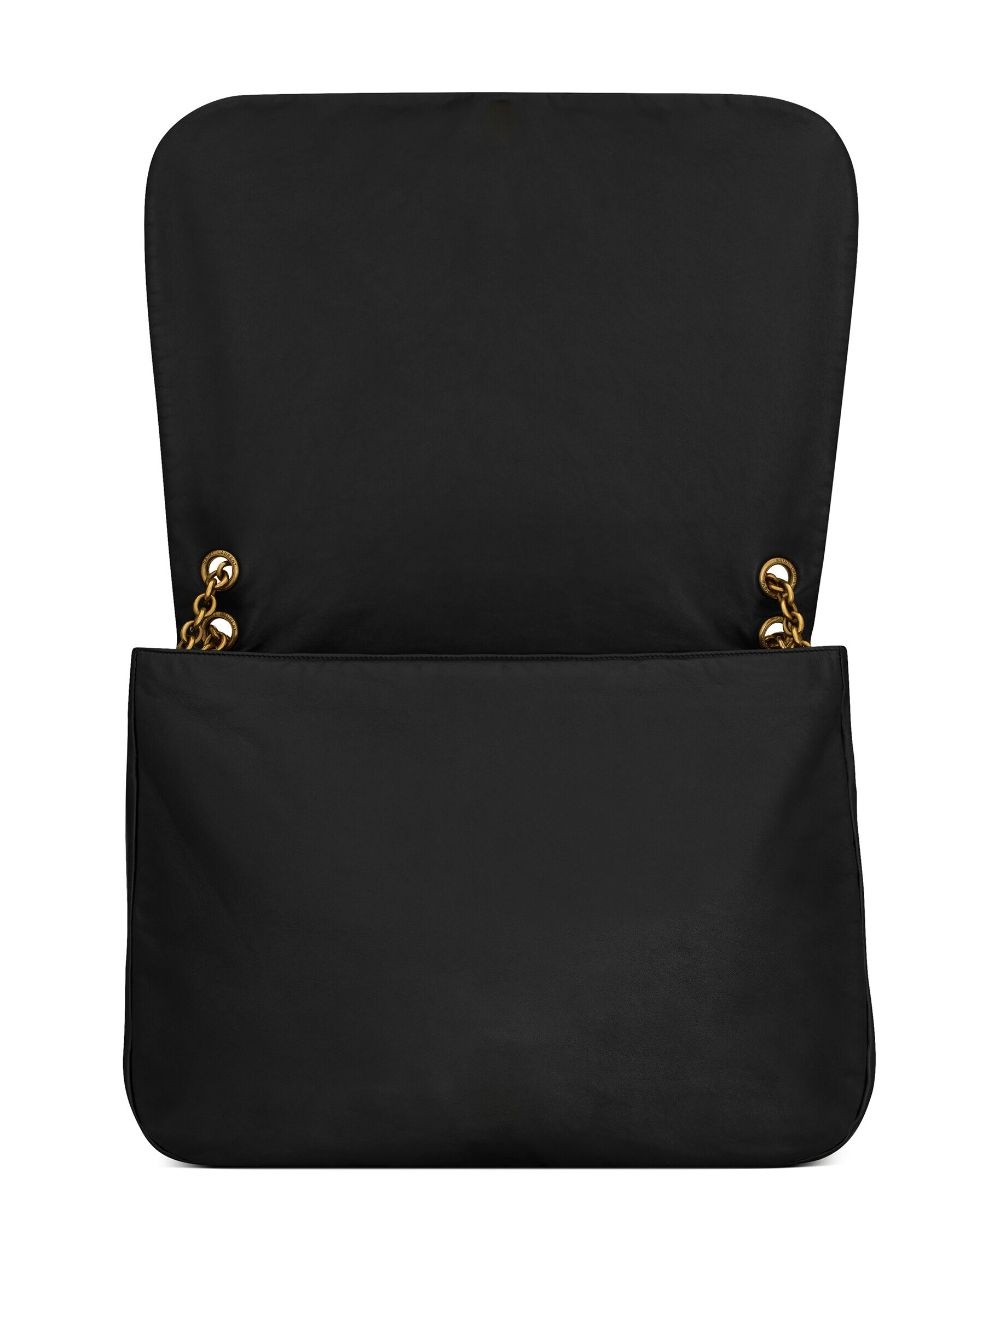 Jamie leather shoulder bag - 4